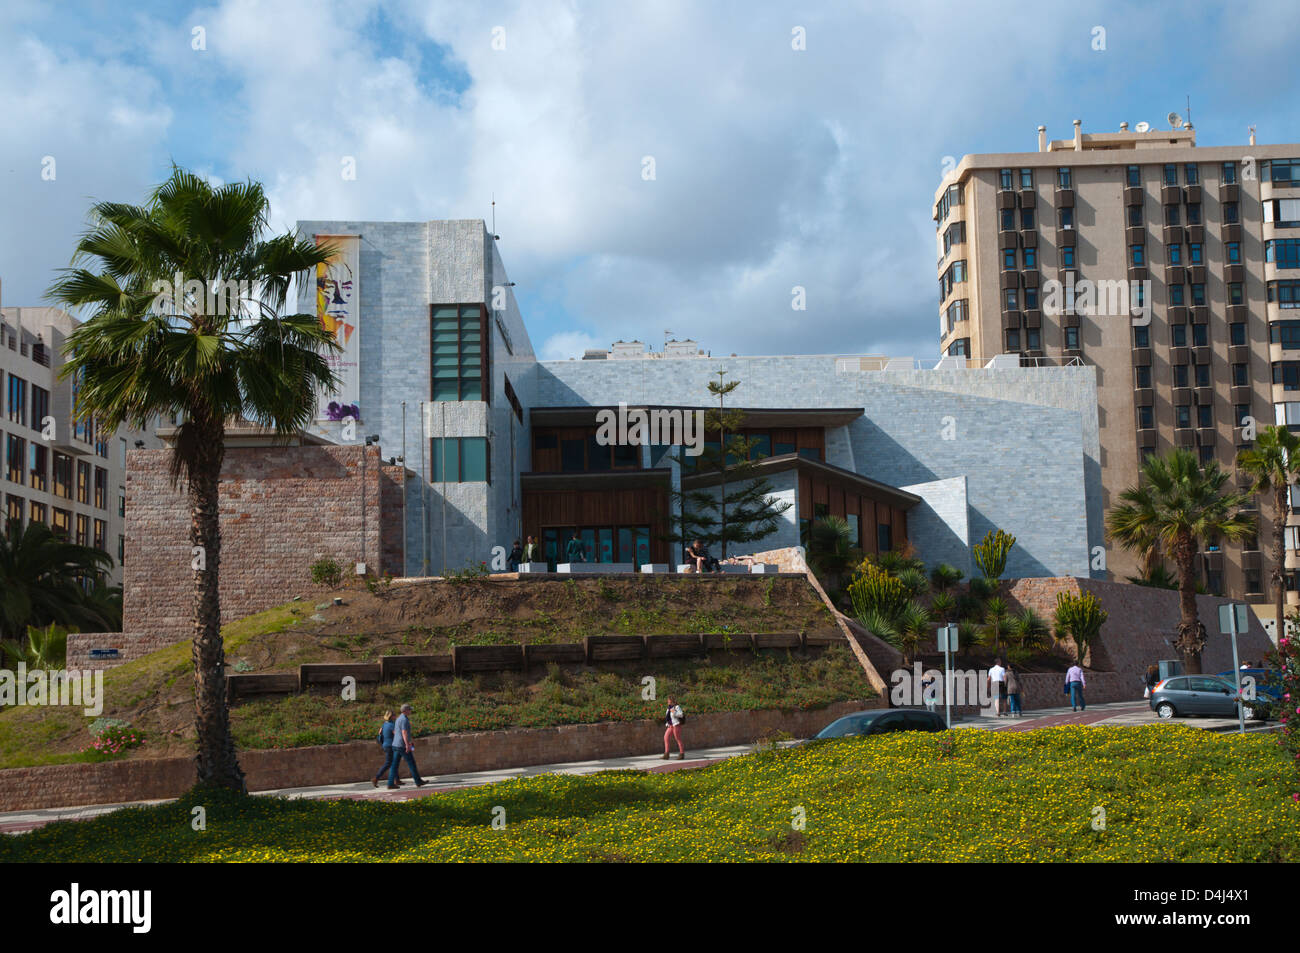 Main library building Ciudad del Mar district Las Palmas city Gran Canaria island the Canary Islands Spain Europe Stock Photo